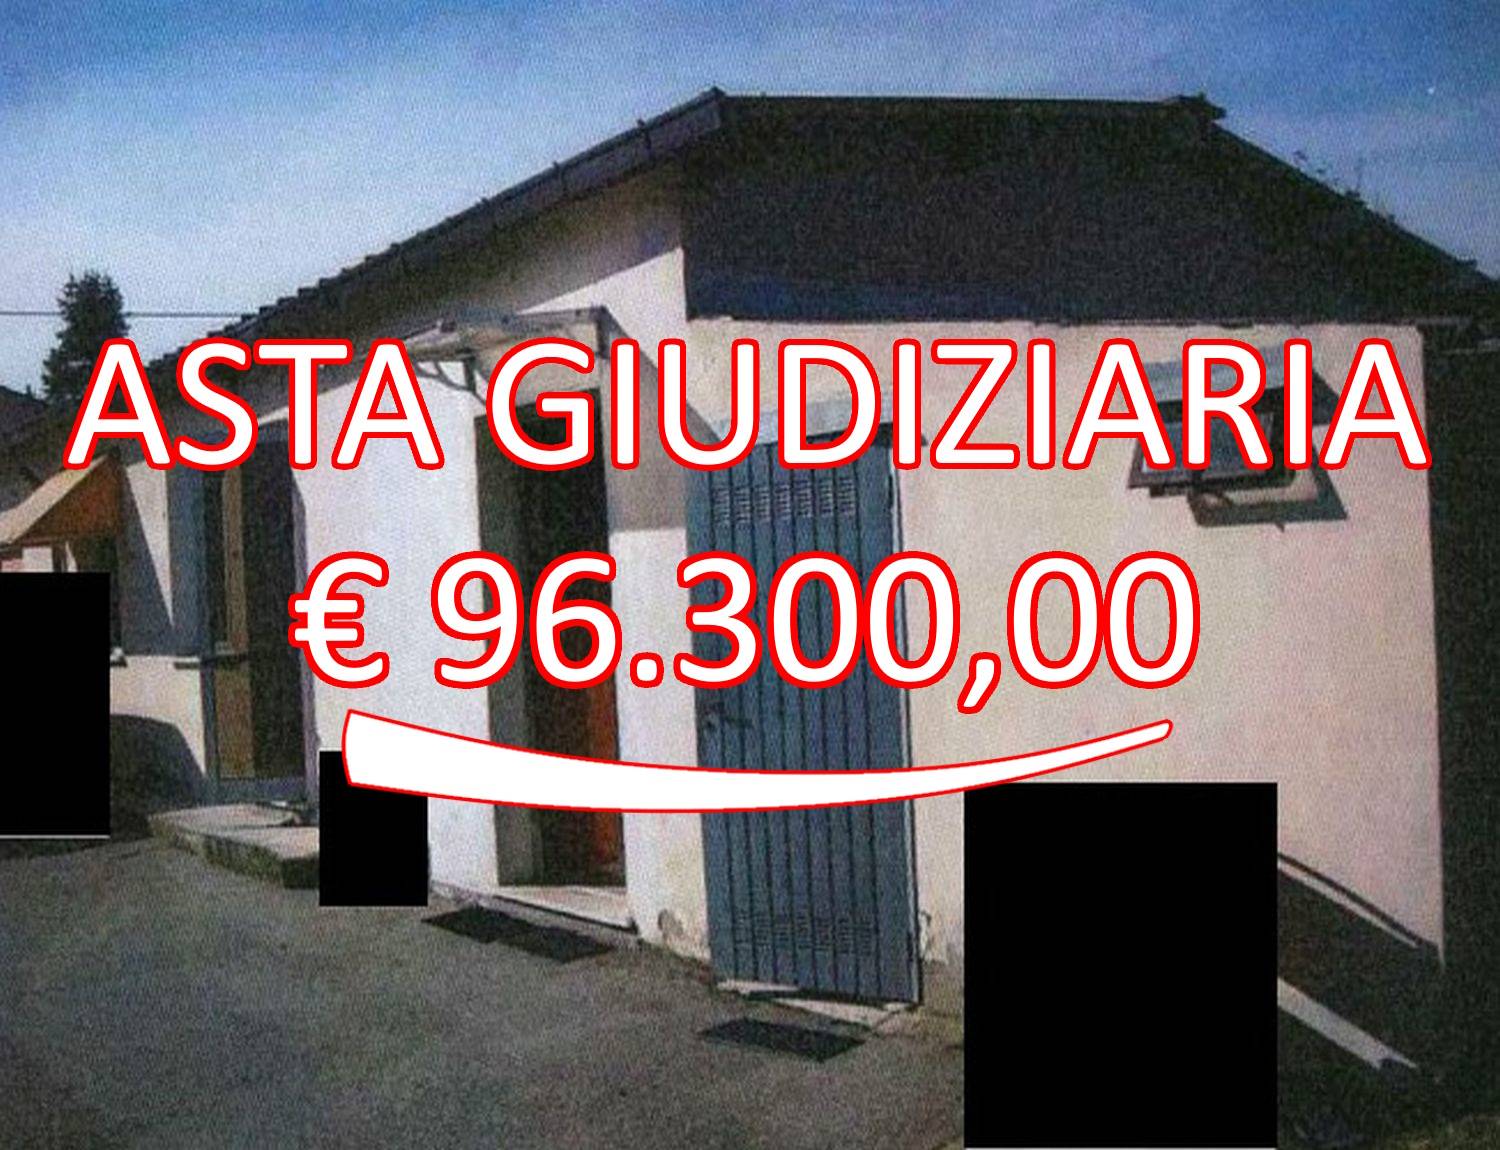 Negozio / Locale in vendita a Crespino, 1 locali, prezzo € 96.300 | CambioCasa.it